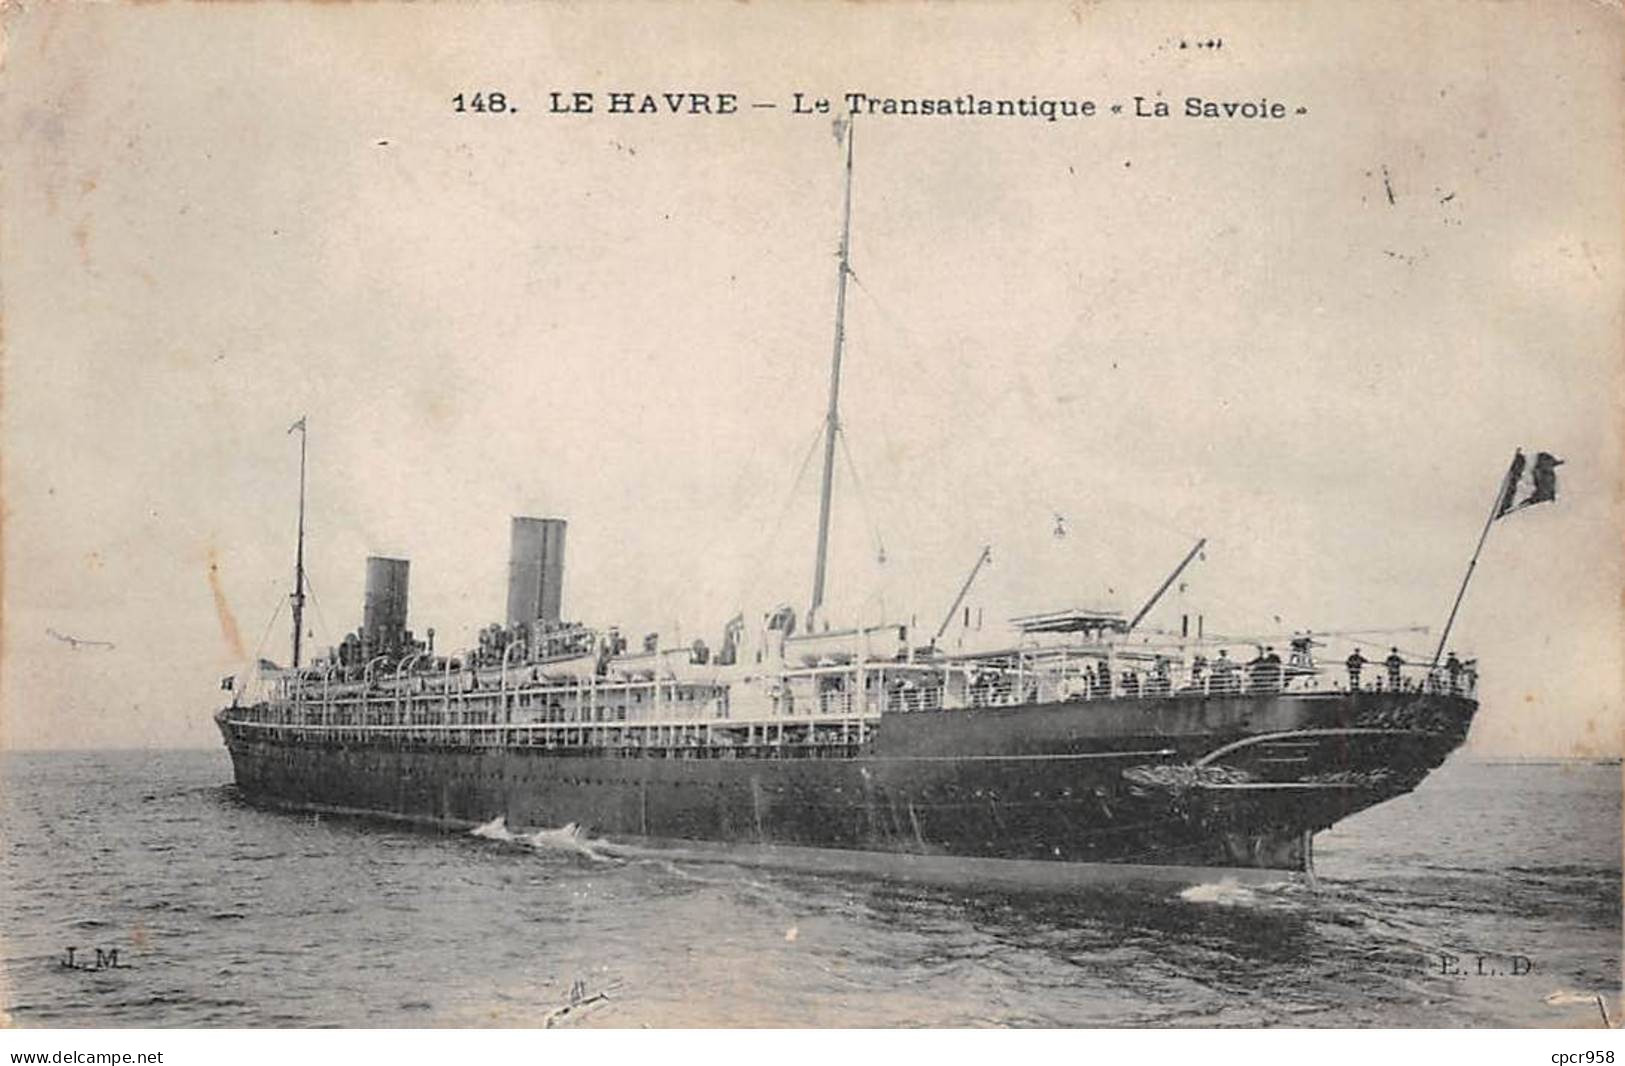 BATEAUX - SAN50963 - Le Havre - Le Transatlantique "La Savoie" - Steamers